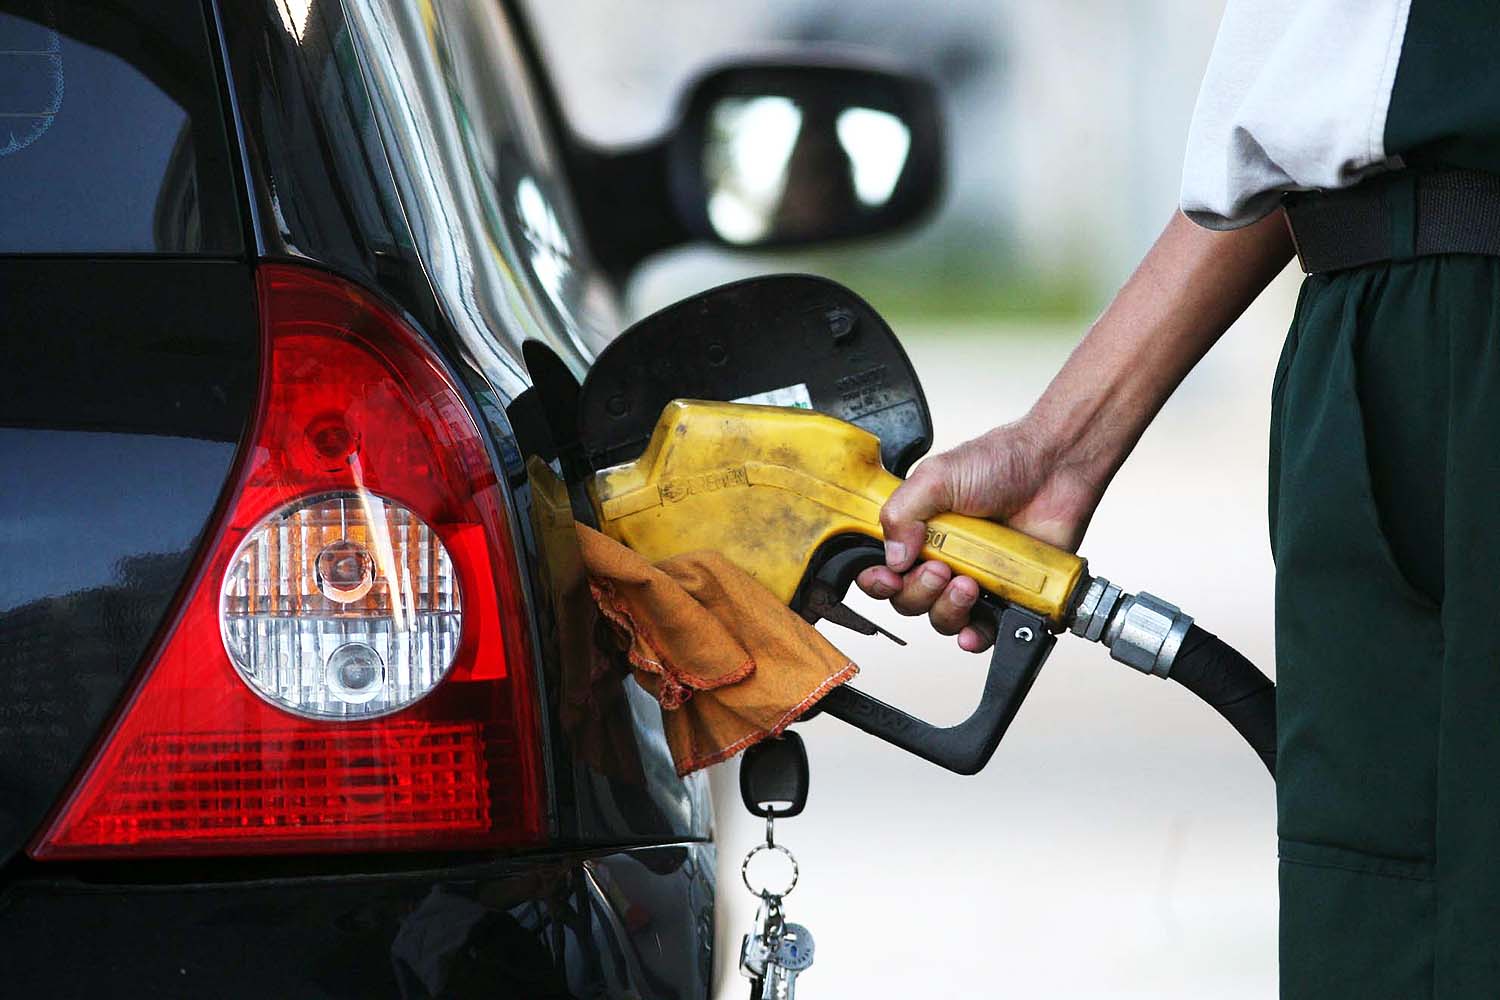 Gasolina registrou alta de 0,2% se comparado a semana anterior - Foto: Reprodução